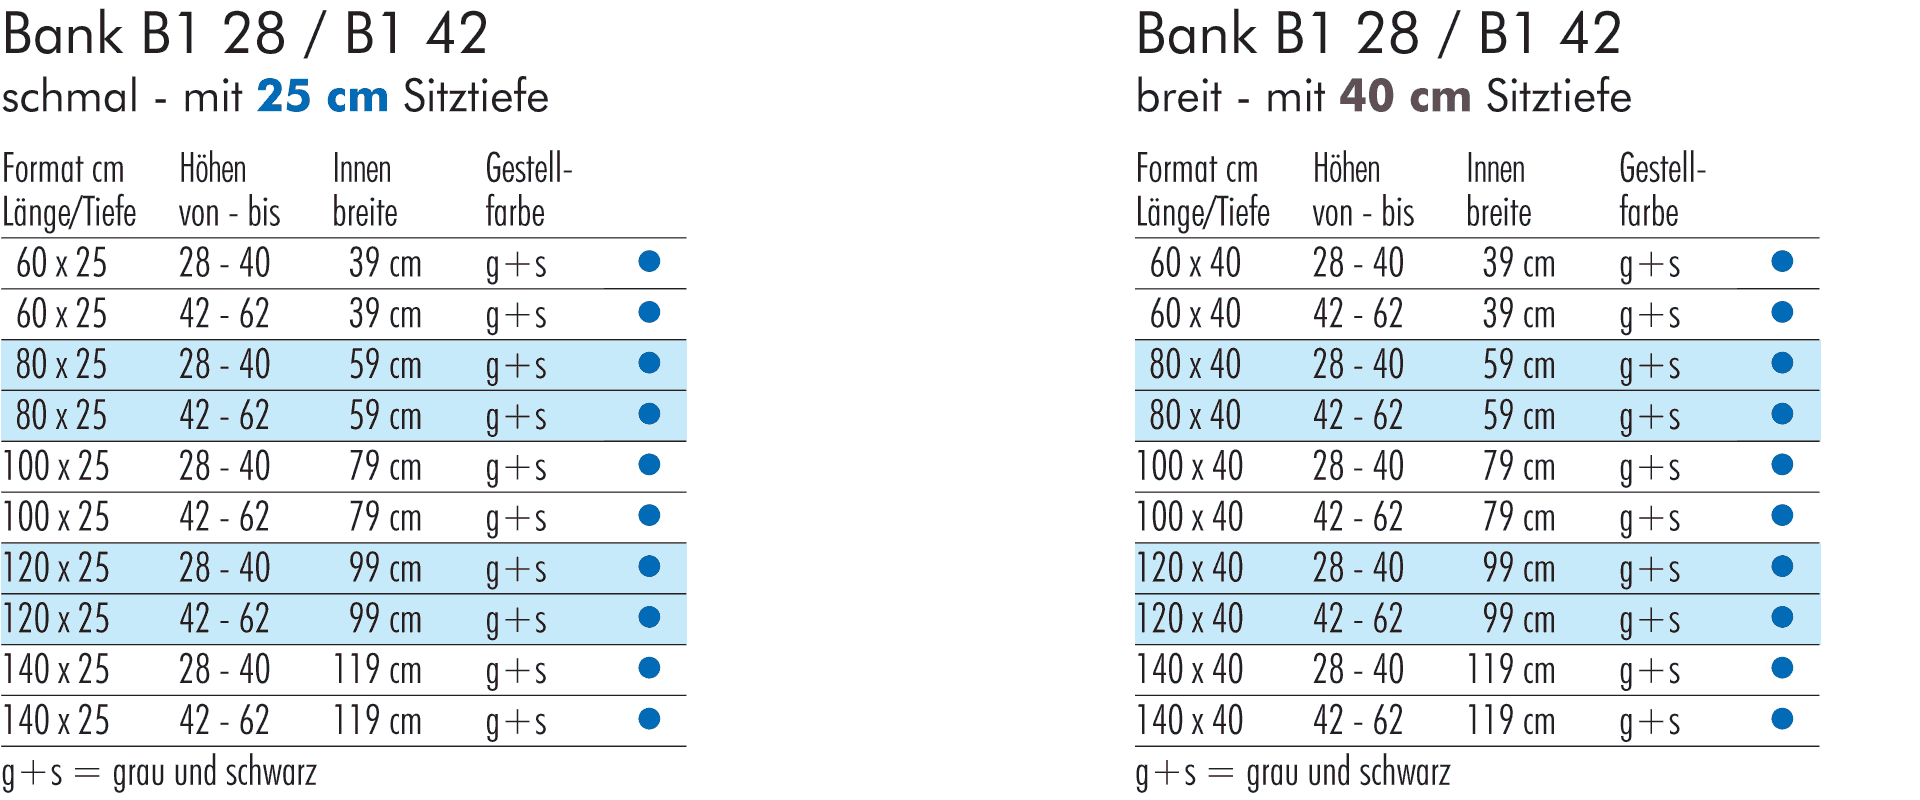 Formattabelle Bank B1